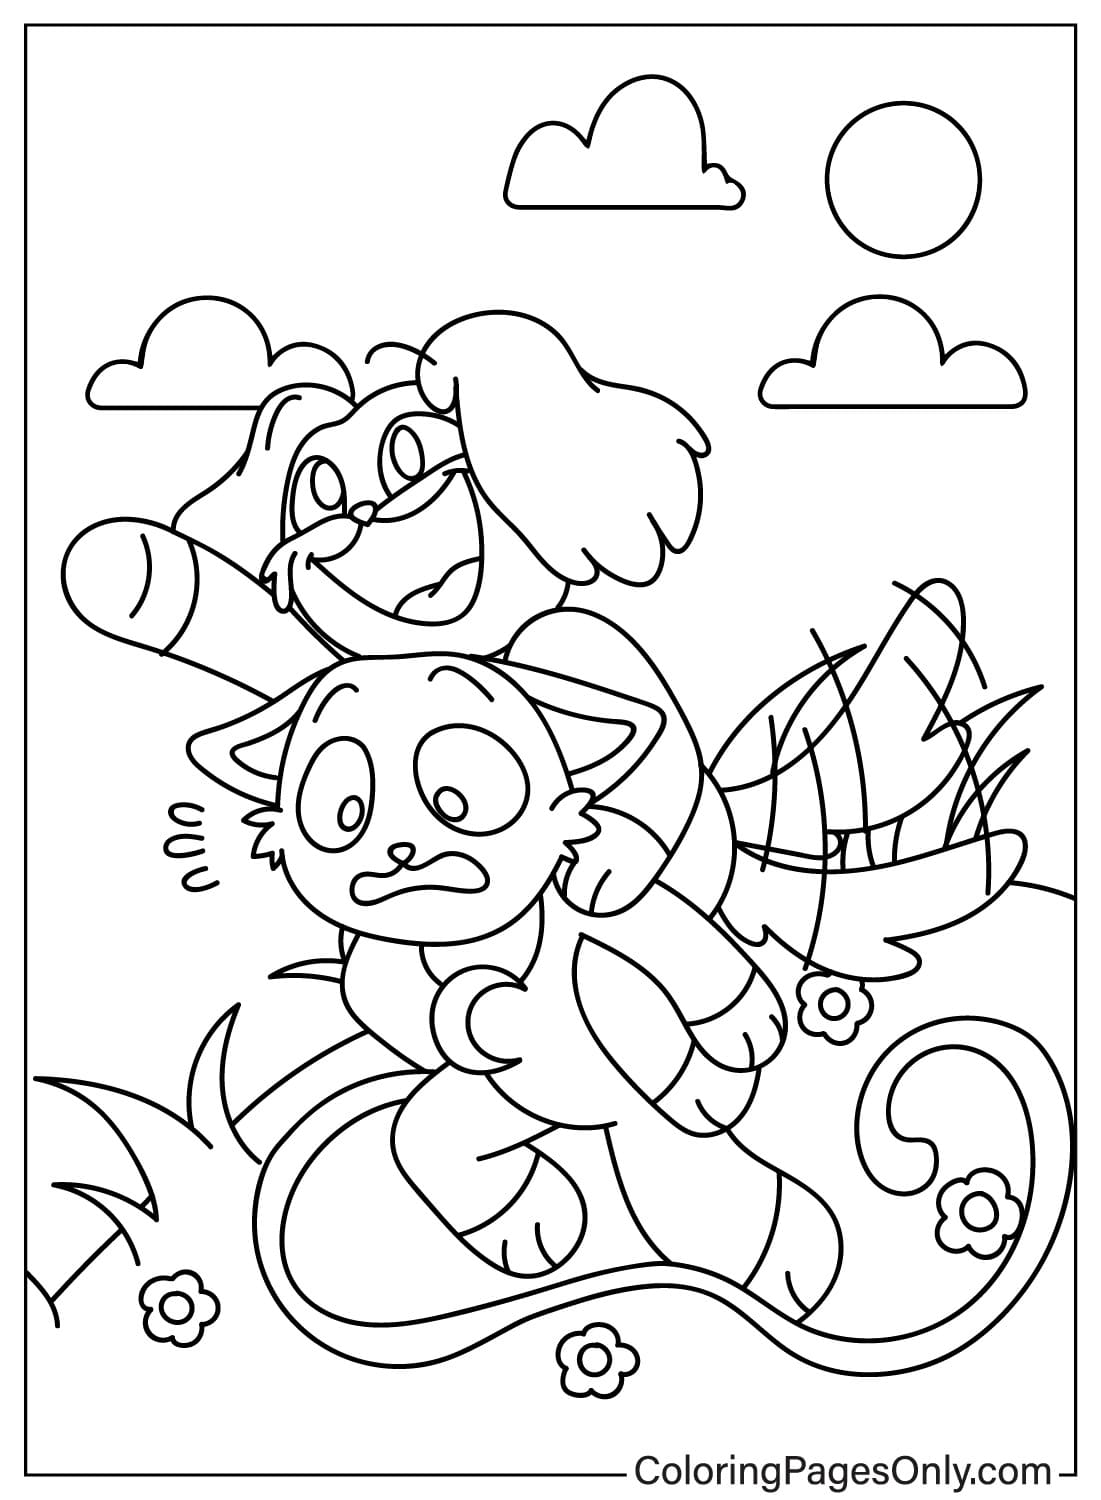 Página para colorir CatNap e DogDay grátis de Smiling Critters